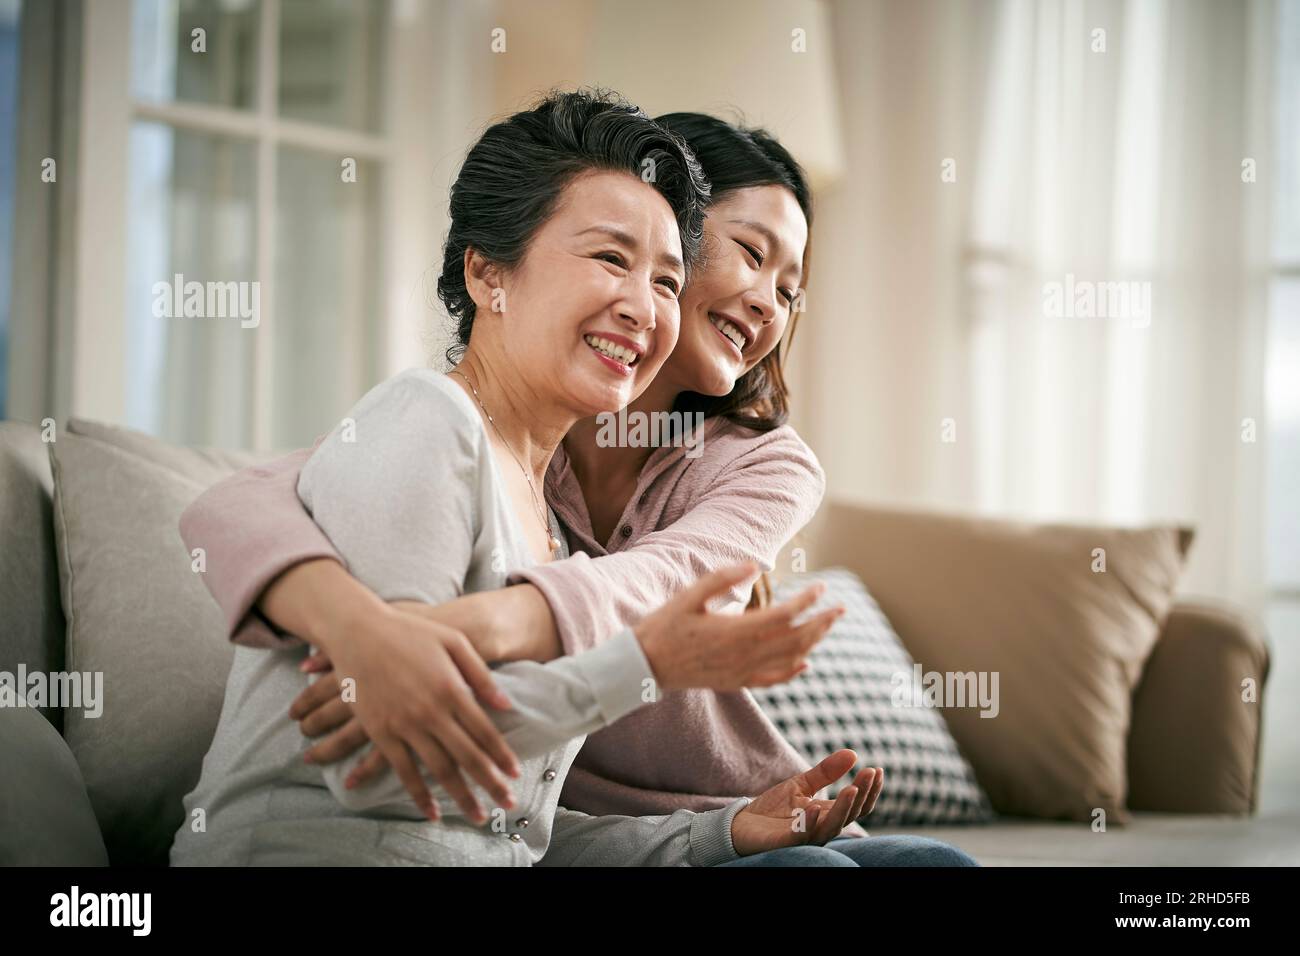 fille adulte asiatique aimante assise sur le canapé à la maison serrant mère aînée heureuse et souriante Banque D'Images